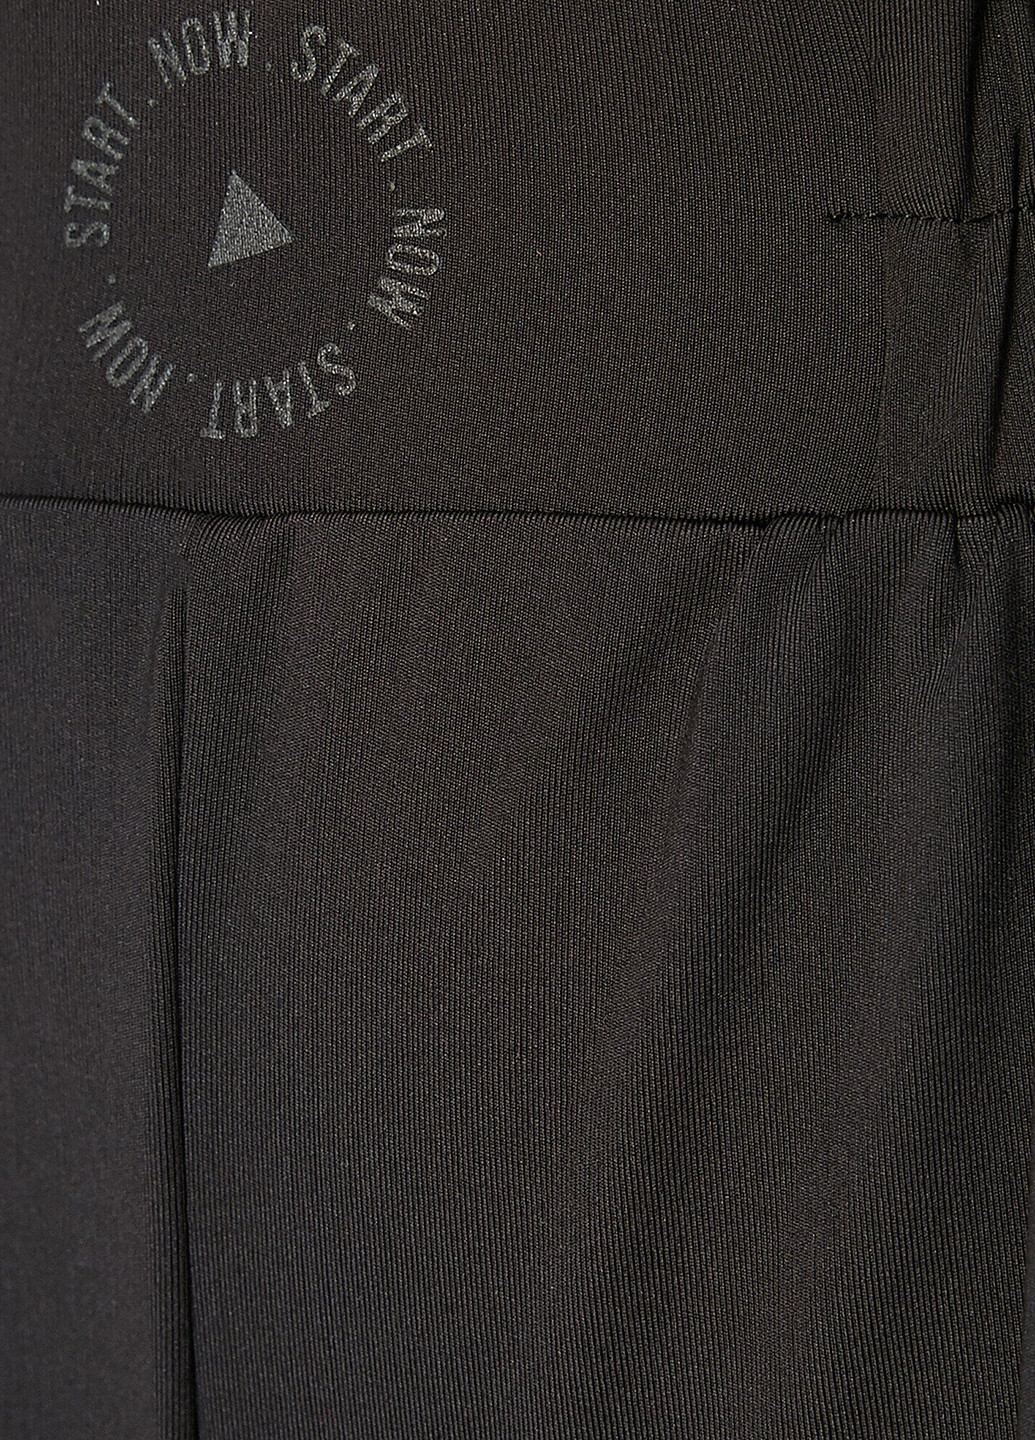 Шорты KOTON надписи чёрные спортивные полиэстер, трикотаж